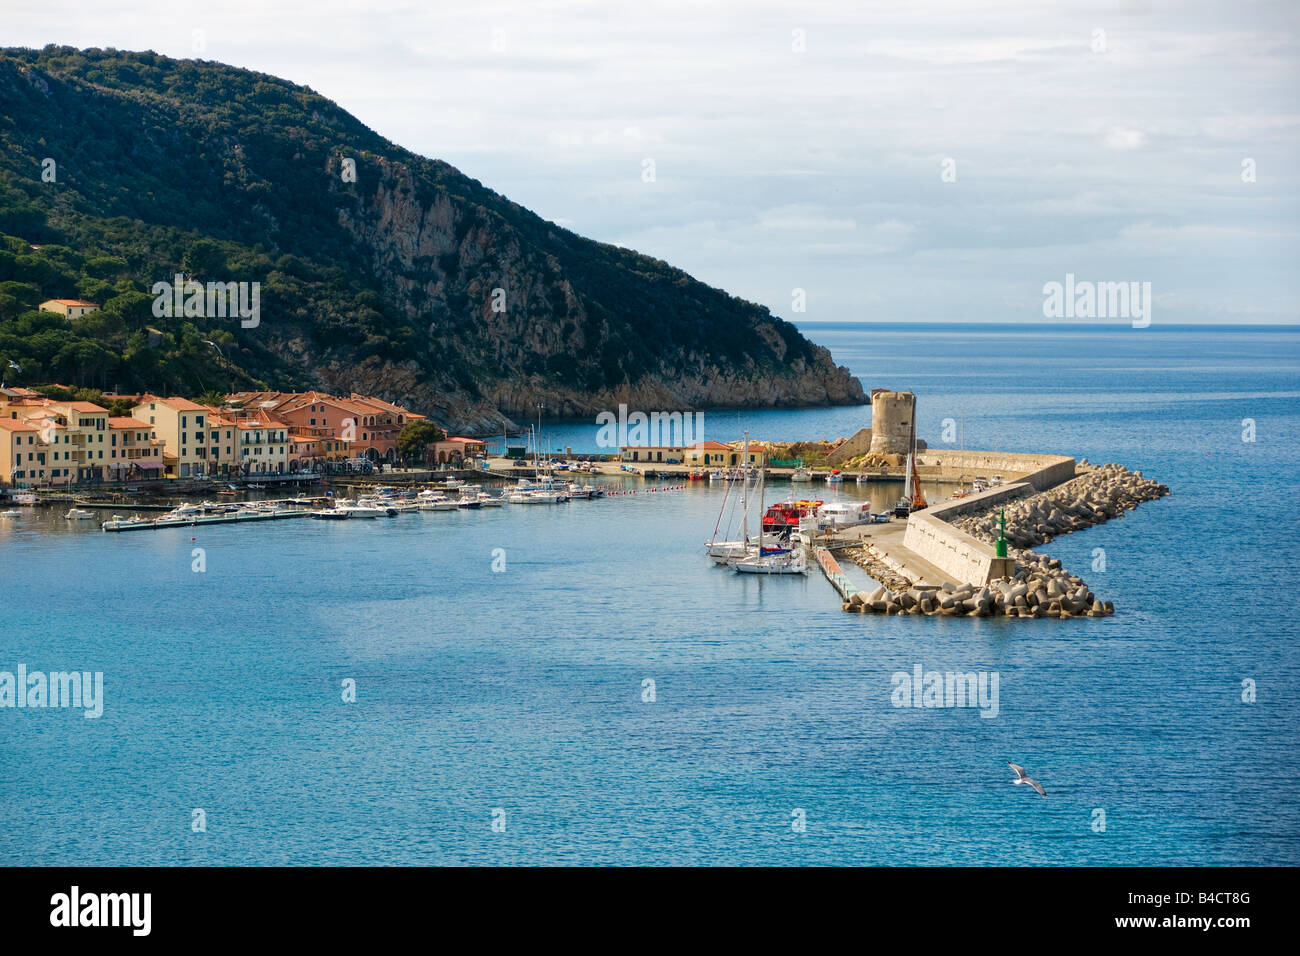 Marciana Marina harbour, Isle of Elba, Livorno, italy. Stock Photo